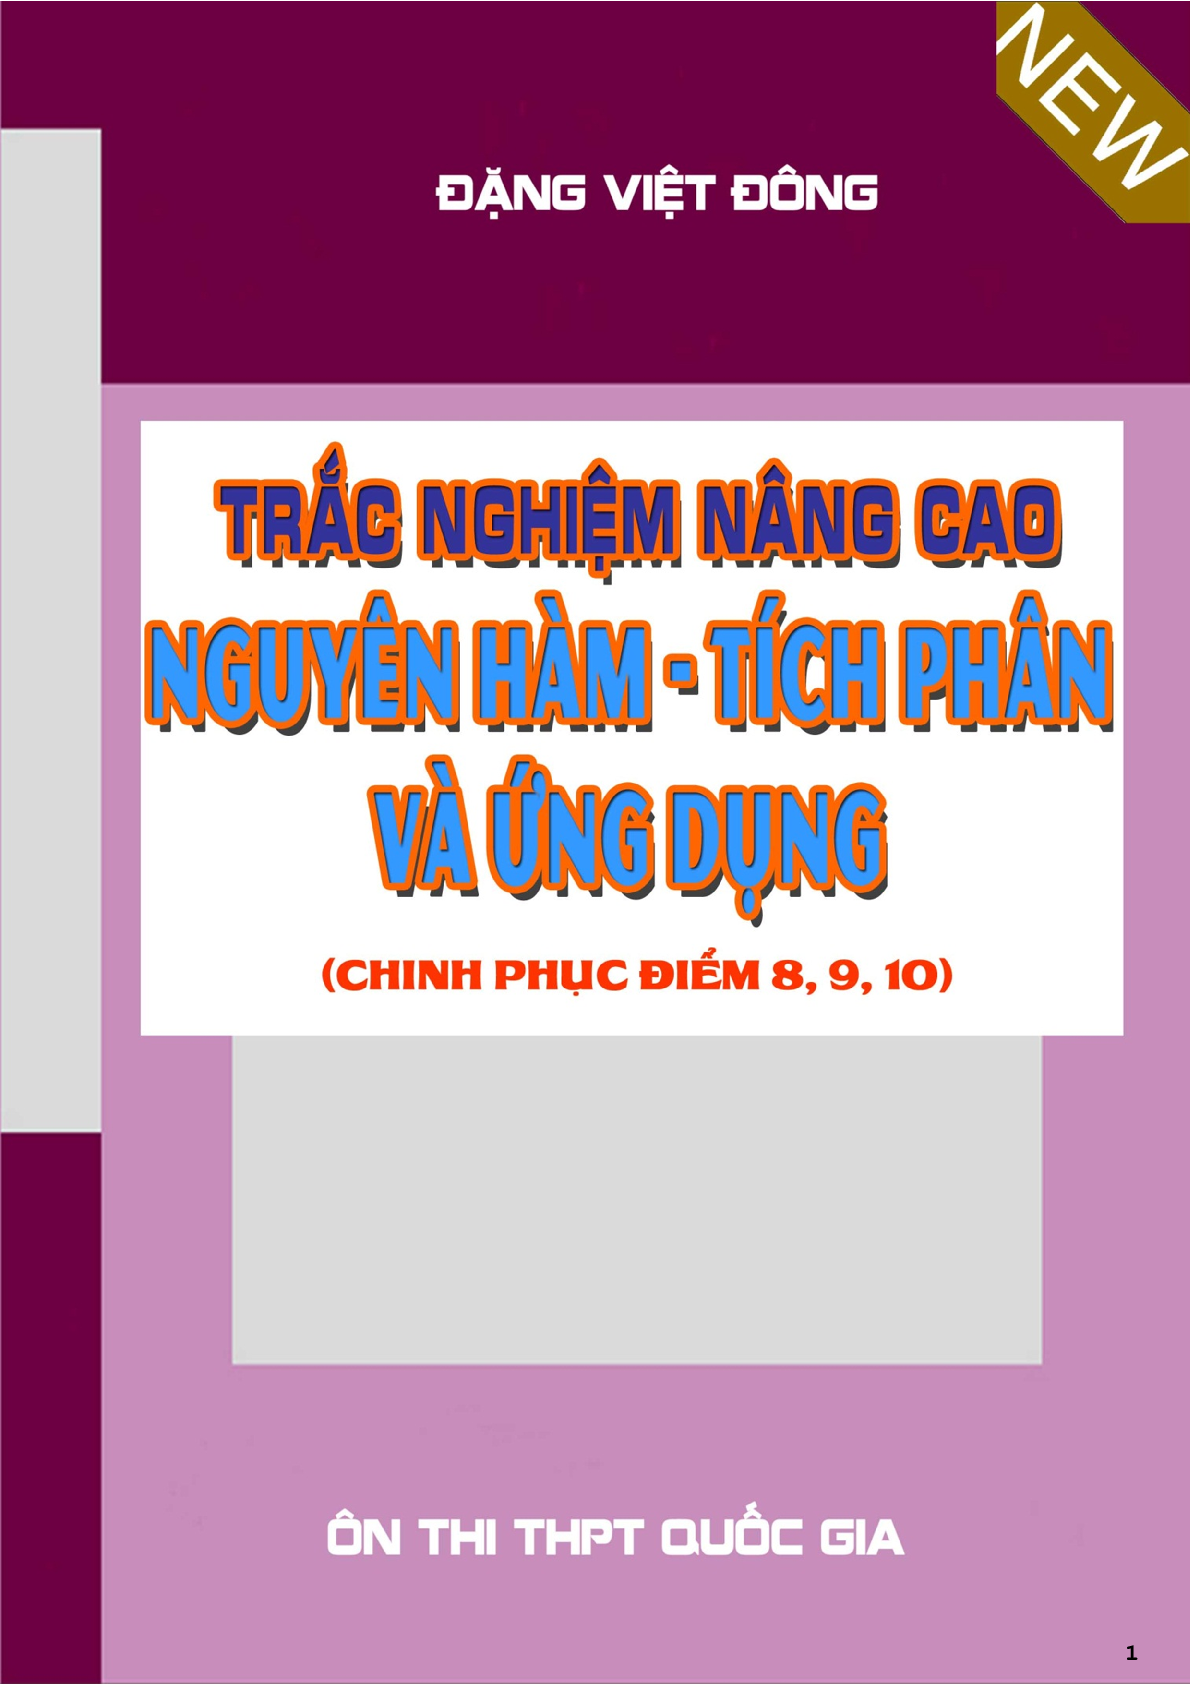 Trắc nghiệm nâng cao nguyên hàm, tích phân và ứng dụng - Đặng Việt Đông (trang 1)